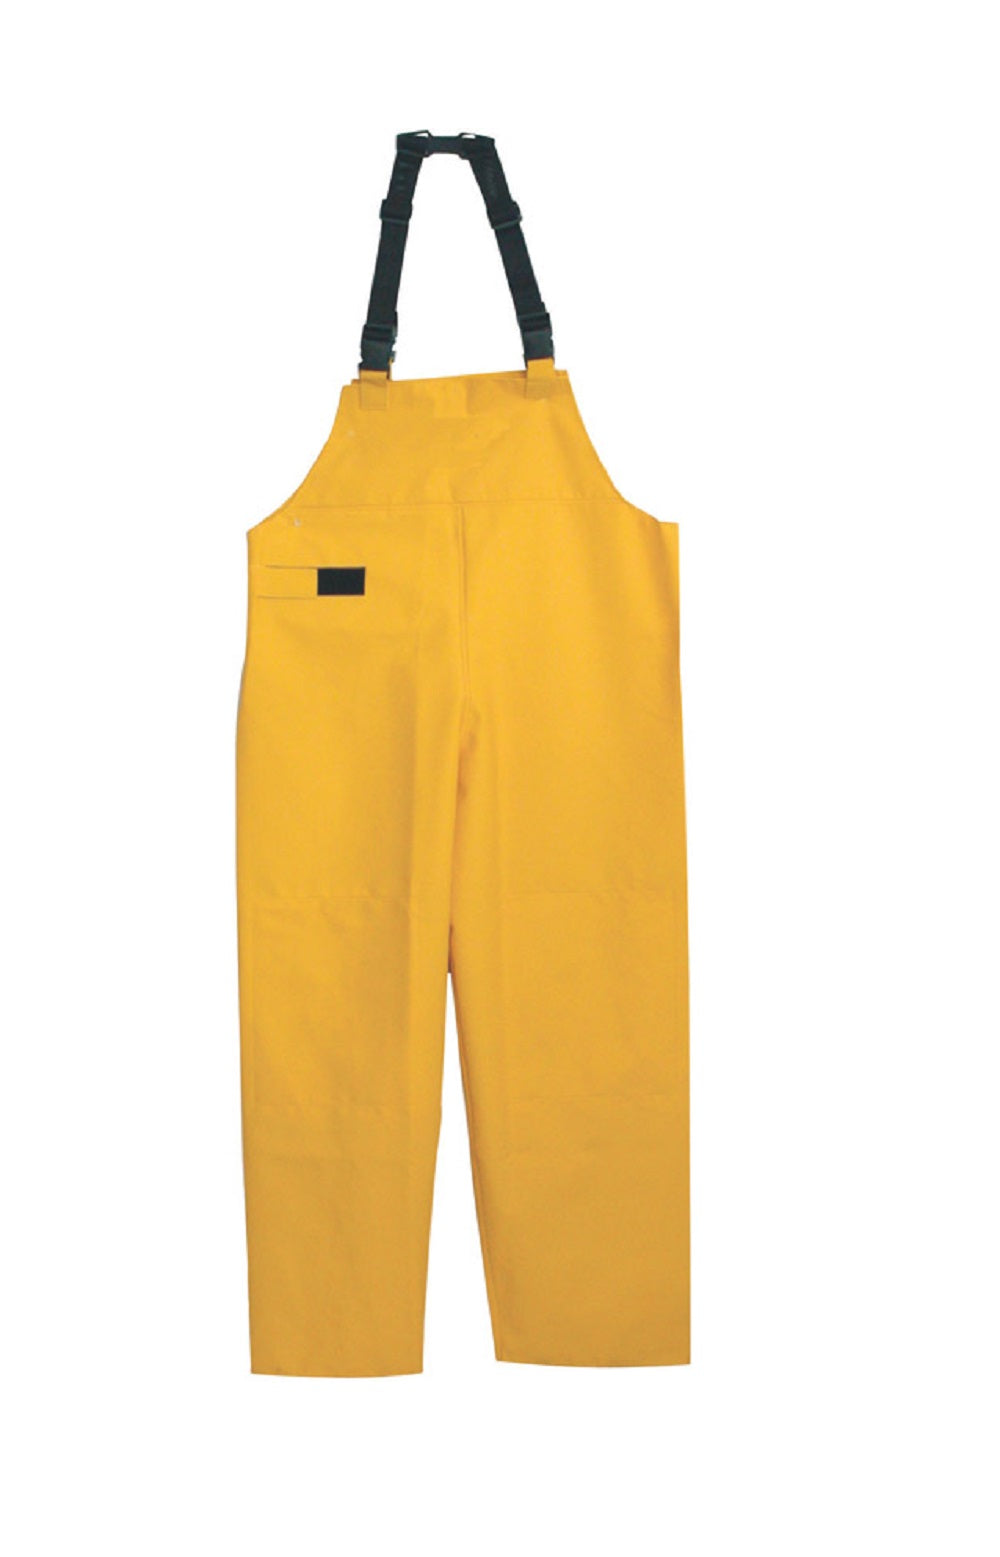 Boss 3PRO5O1YL Bib Style Rain Pant, Large, Yellow